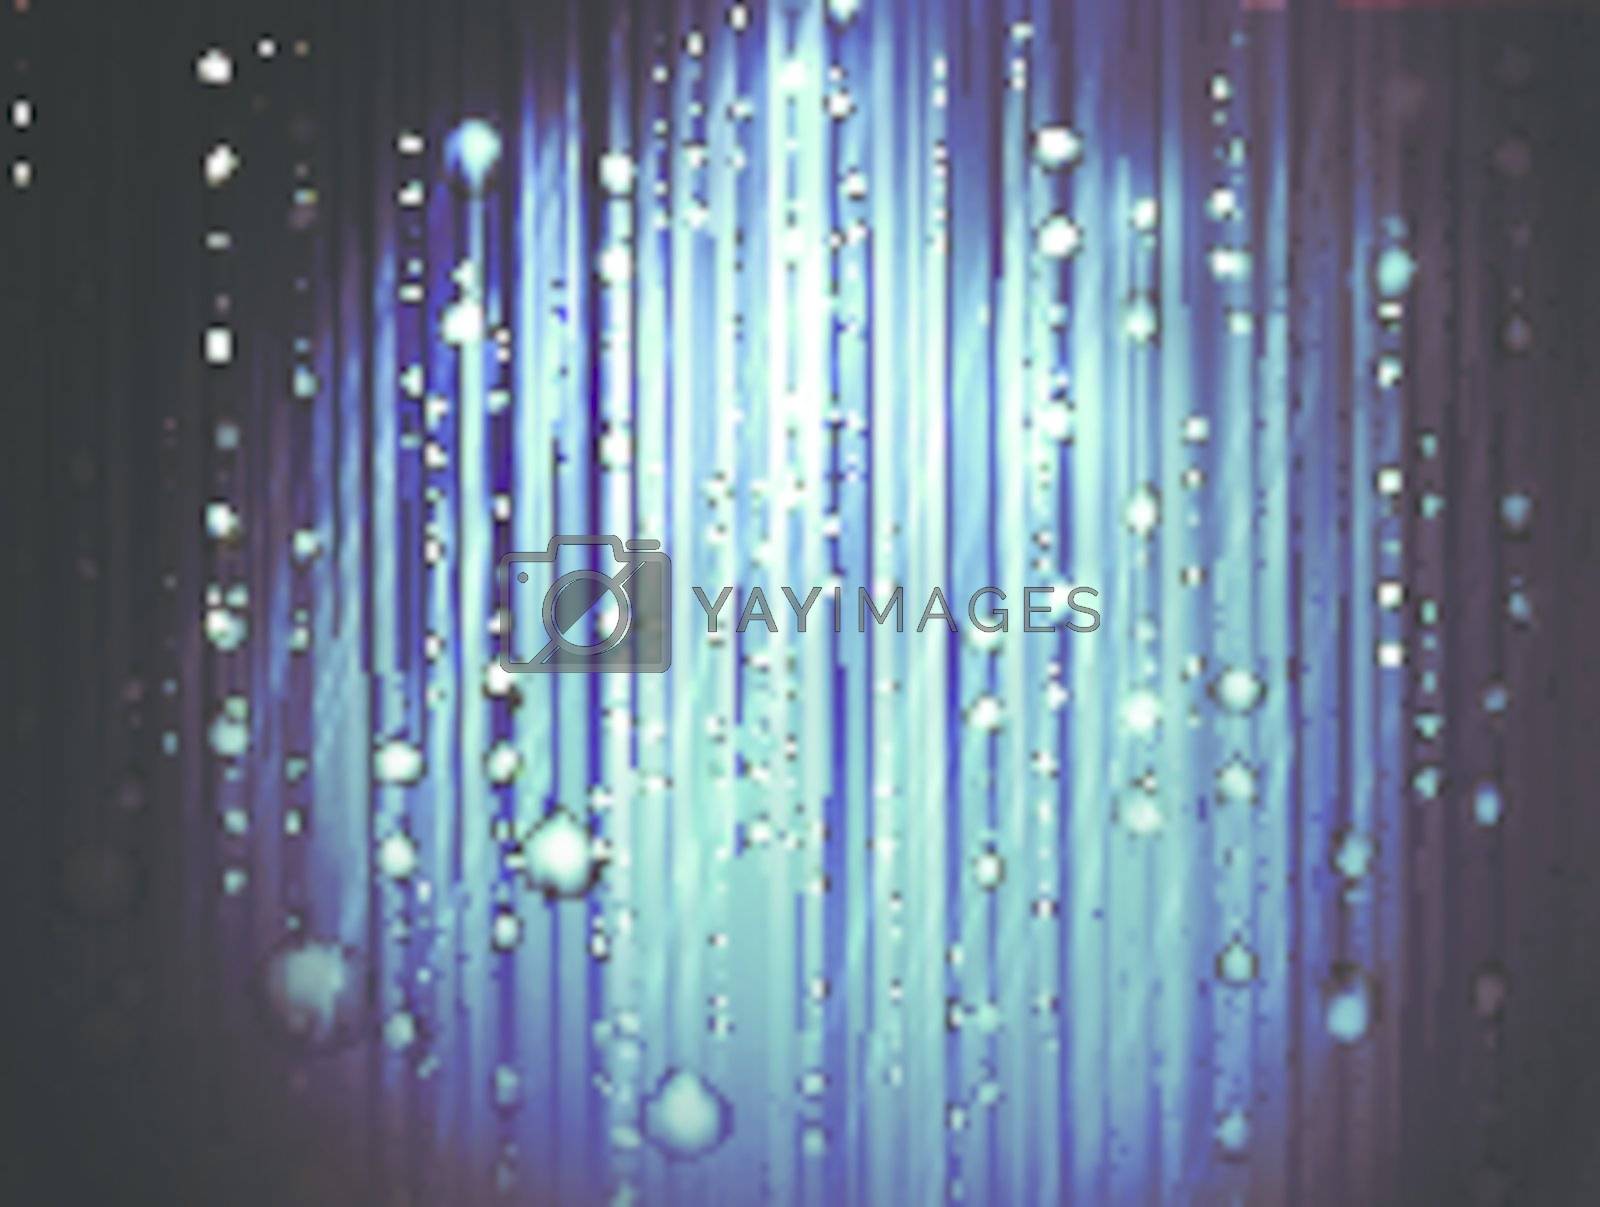 Royalty free image of abstract rain by razvodovska